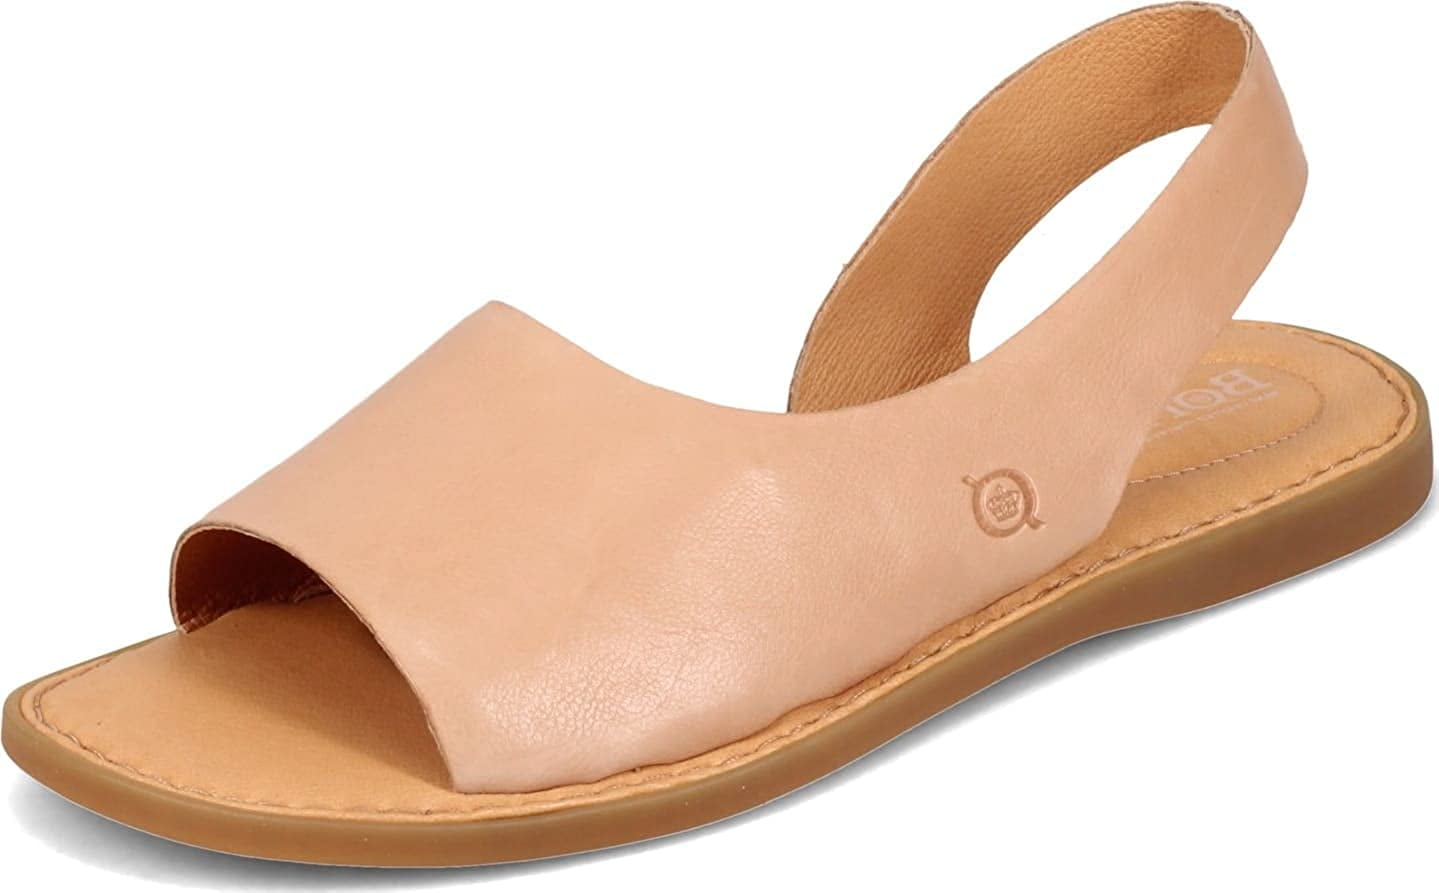 Indigo by Clarks Flip Flop Sandals for Women | Mercari